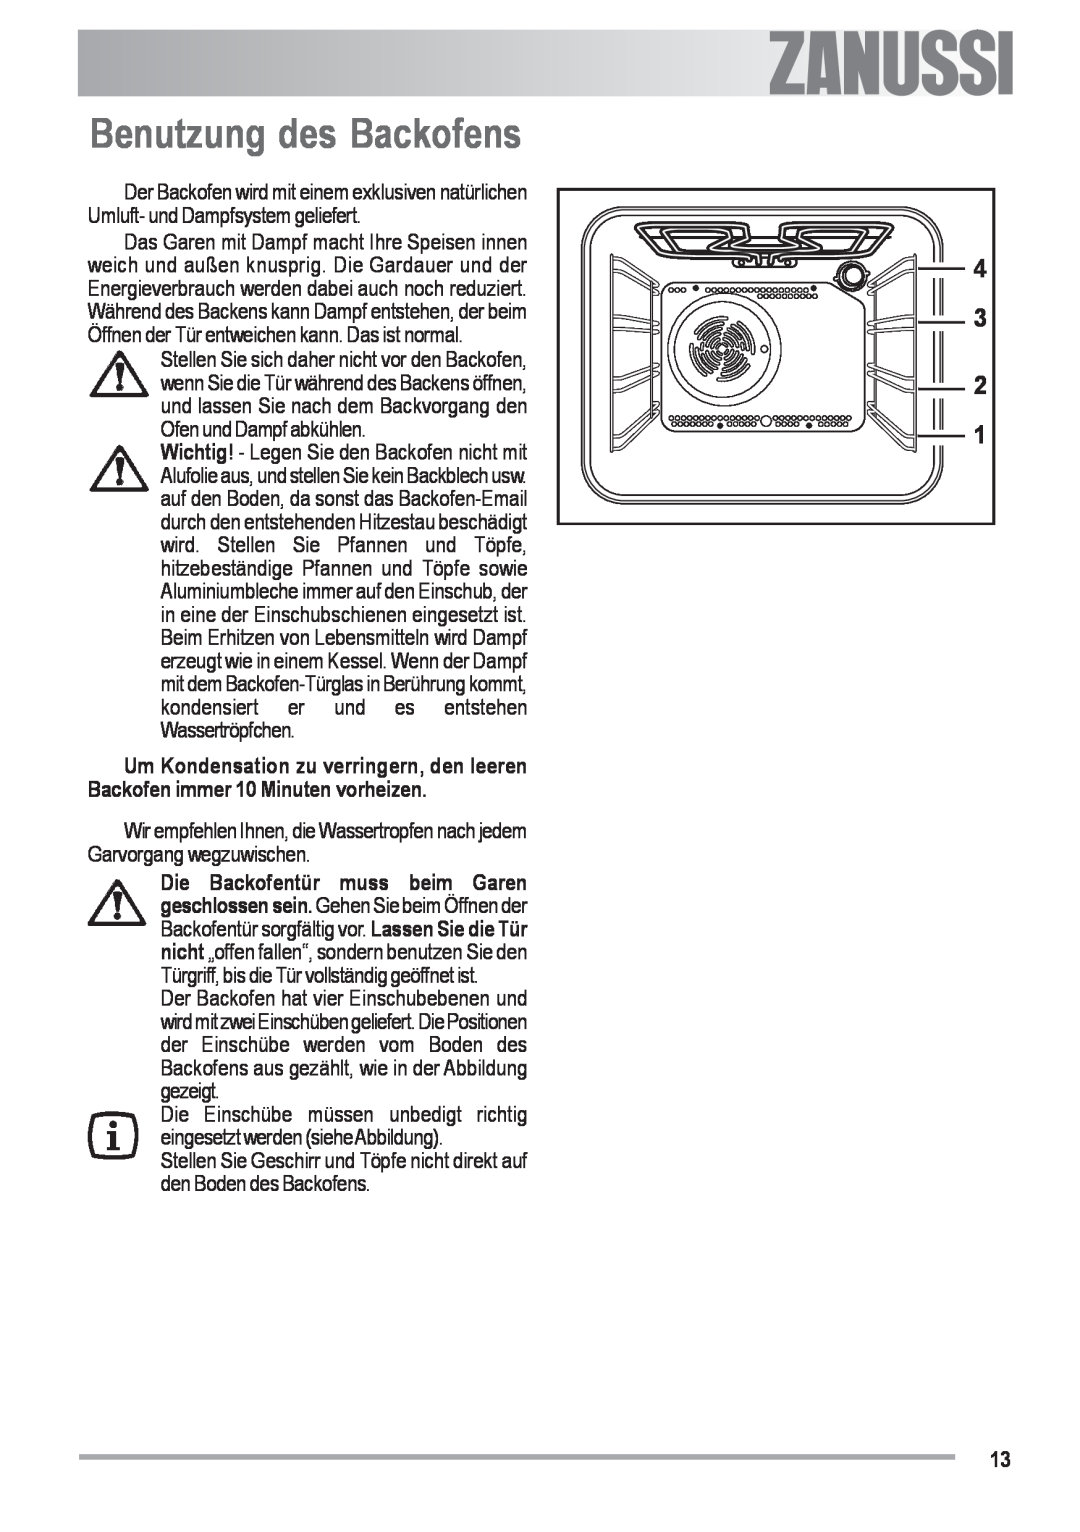 Zanussi ZOU 482 user manual Benutzung des Backofens, Electrolux 